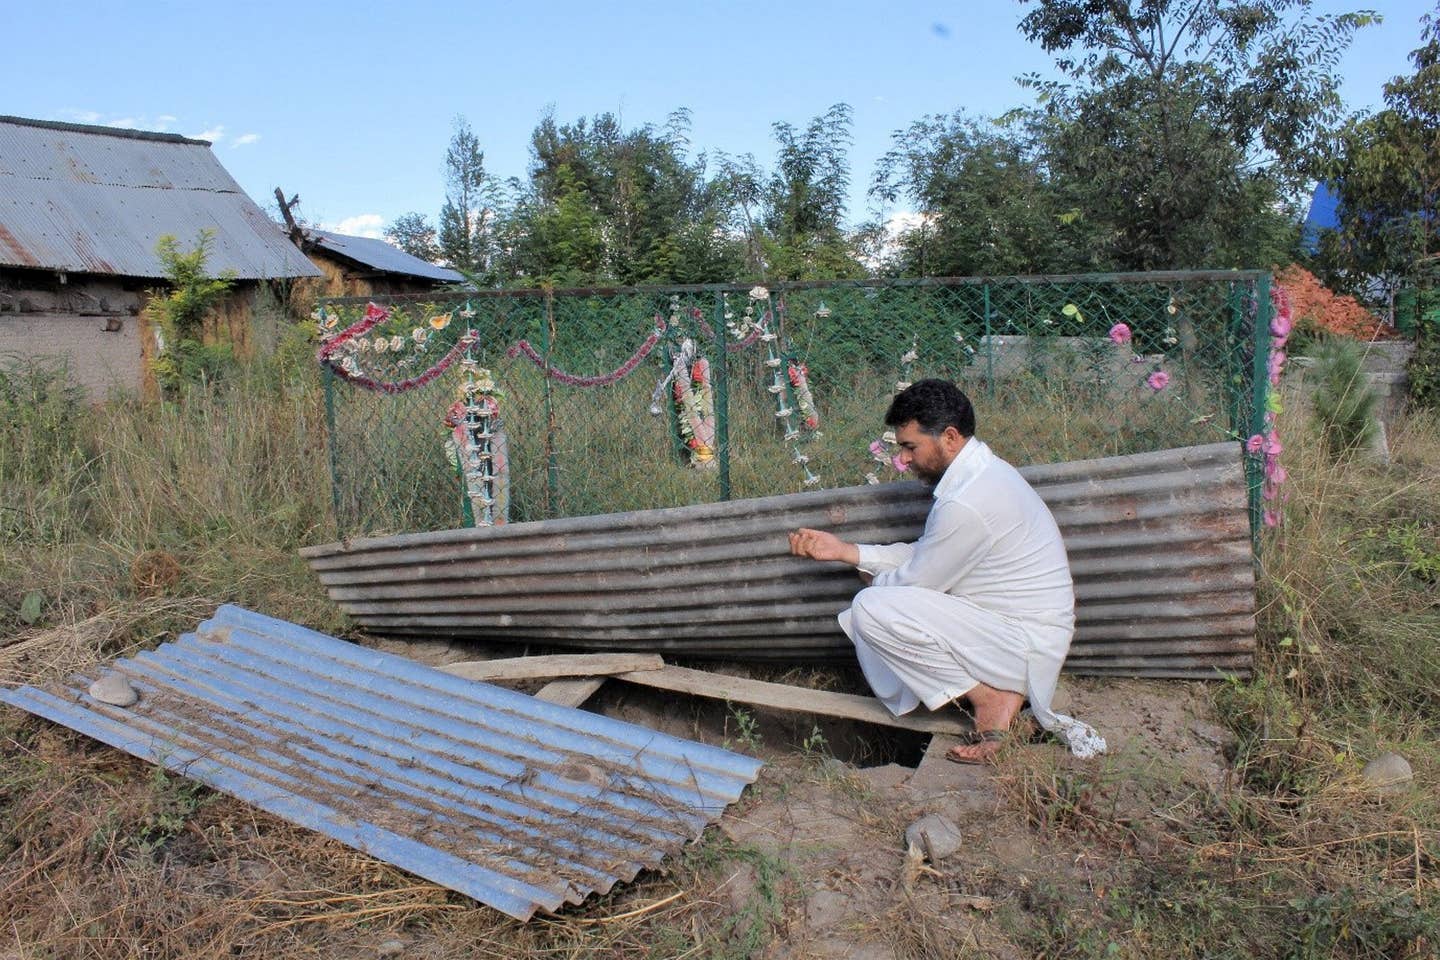 مشتاق احمد وانی نے اپنے 16 سالہ بیٹے اطہر مشتاق کی گھر کے قریب ہی قبر کھود رکھی ہے لیکن وہ نہیں جانتے کہ ان کے بیٹے کو قابض بھارتی فوج نے کہاں دفن کیا ہے۔ فوٹو عابدہ احمد